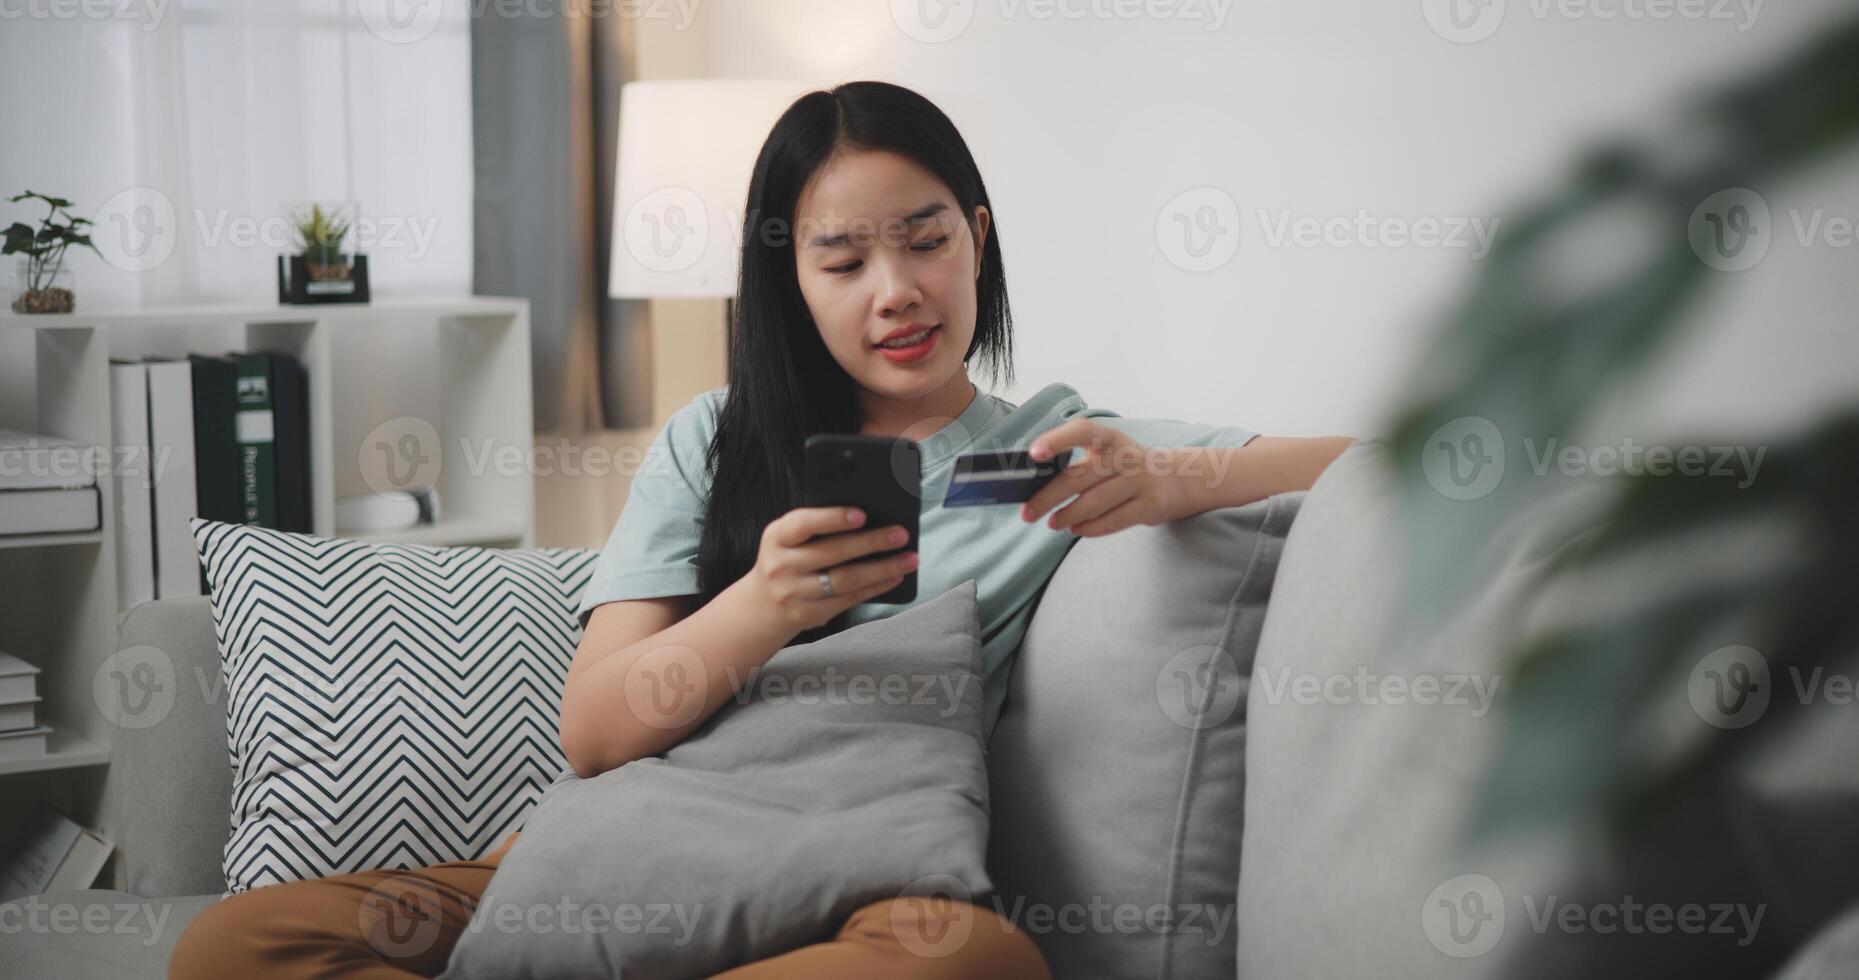 selectief focus, jong Aziatisch vrouw zittend Aan sofa Holding credit kaart maken online betaling voor aankoop in web op te slaan gebruik makend van smartphone. foto